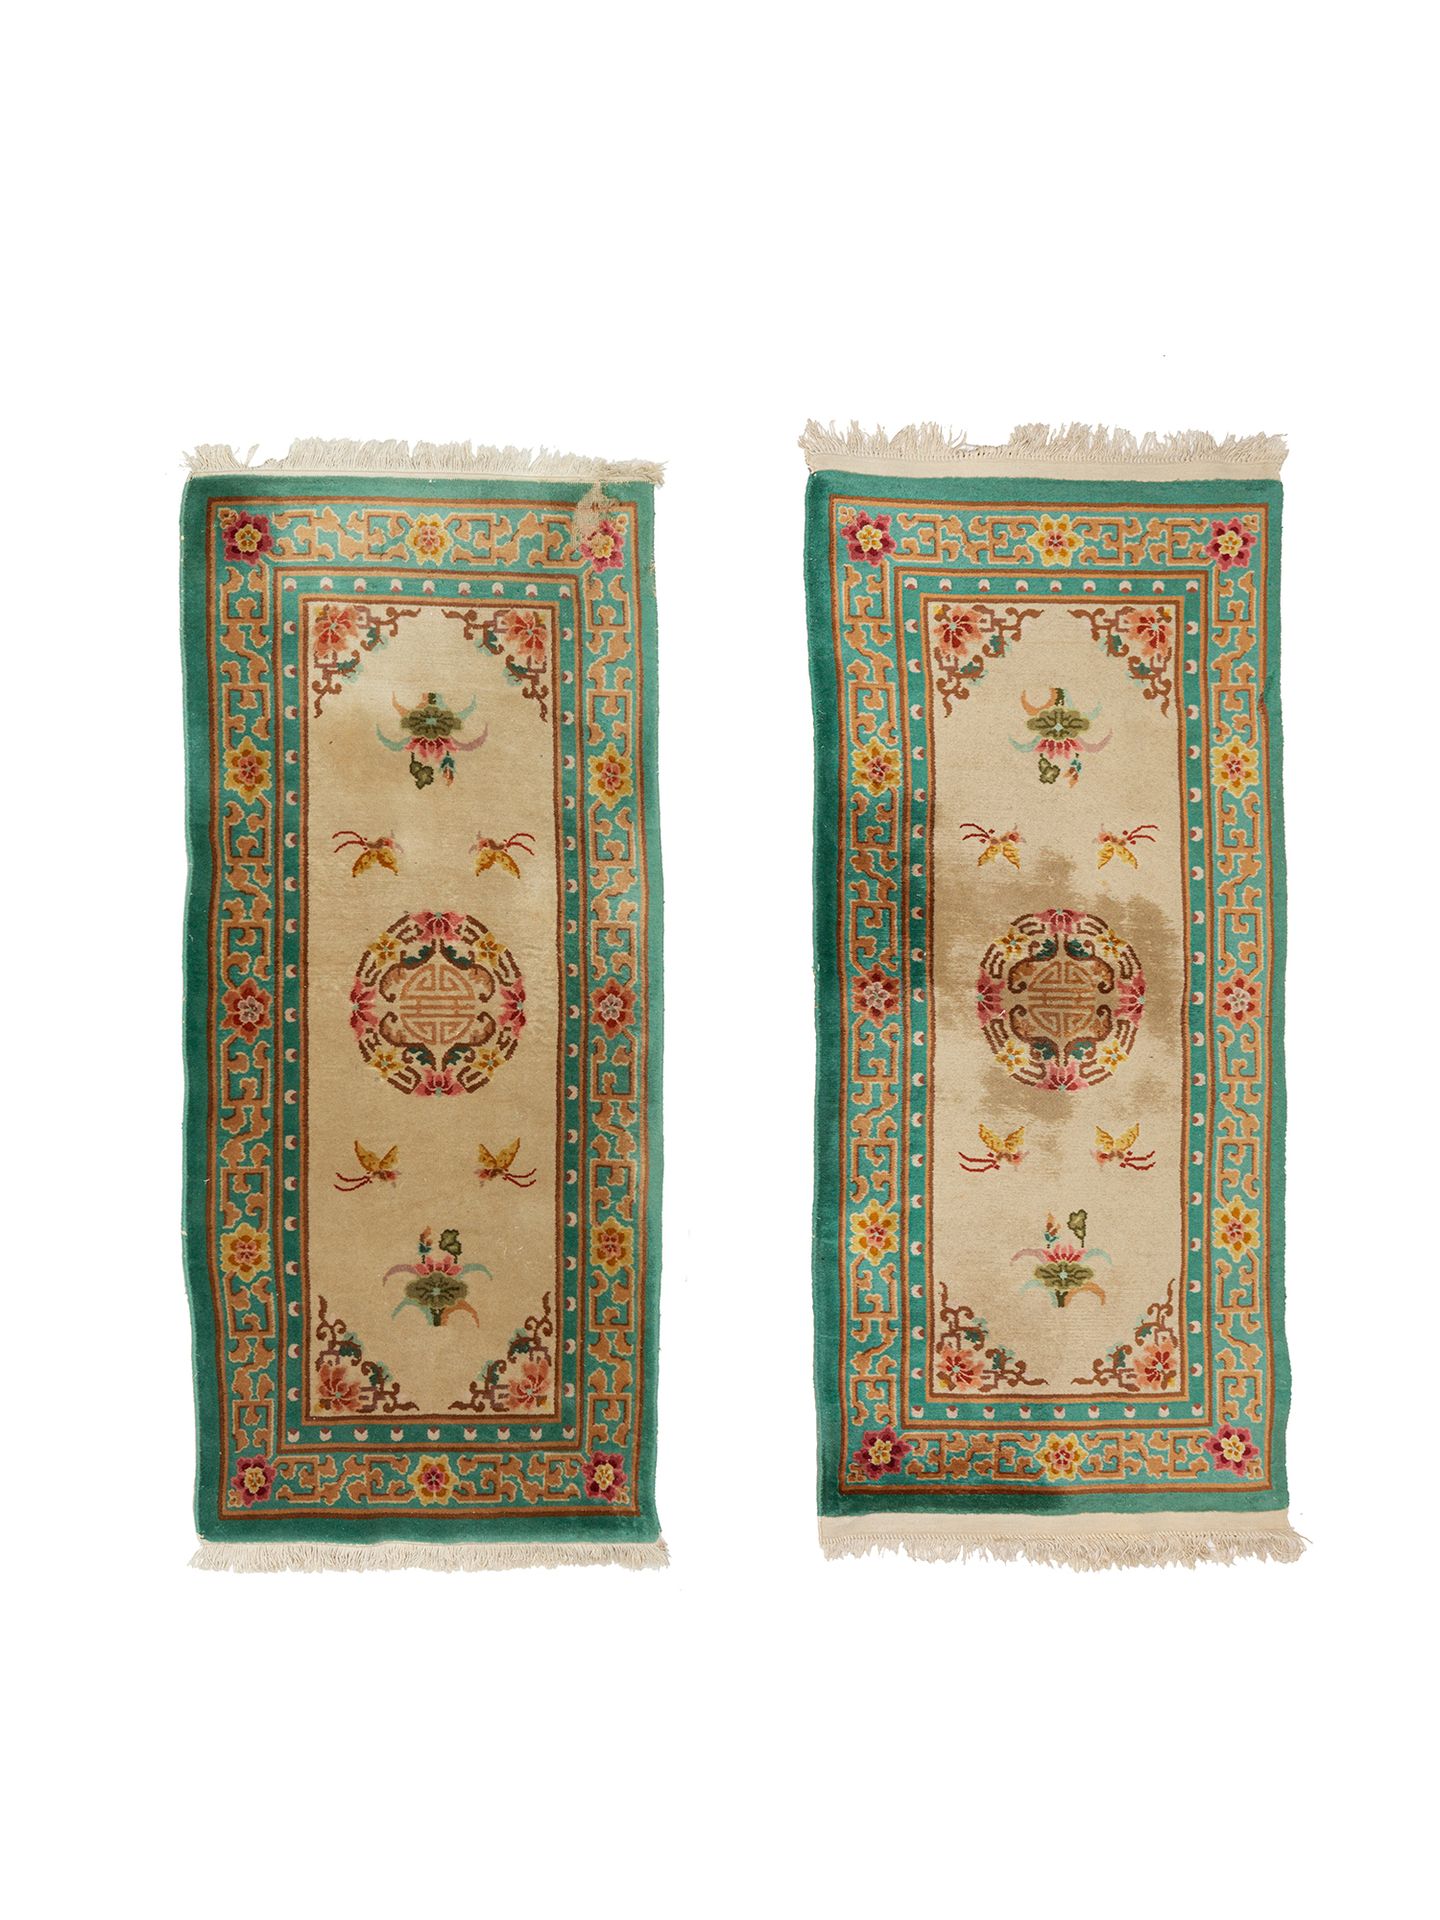 Null 一套两张20世纪中期的绿色背景的中国地毯。

技术特点 : 羊毛天鹅绒，棉质底板

状况良好

尺寸：每个183 x 91厘米

磨损的